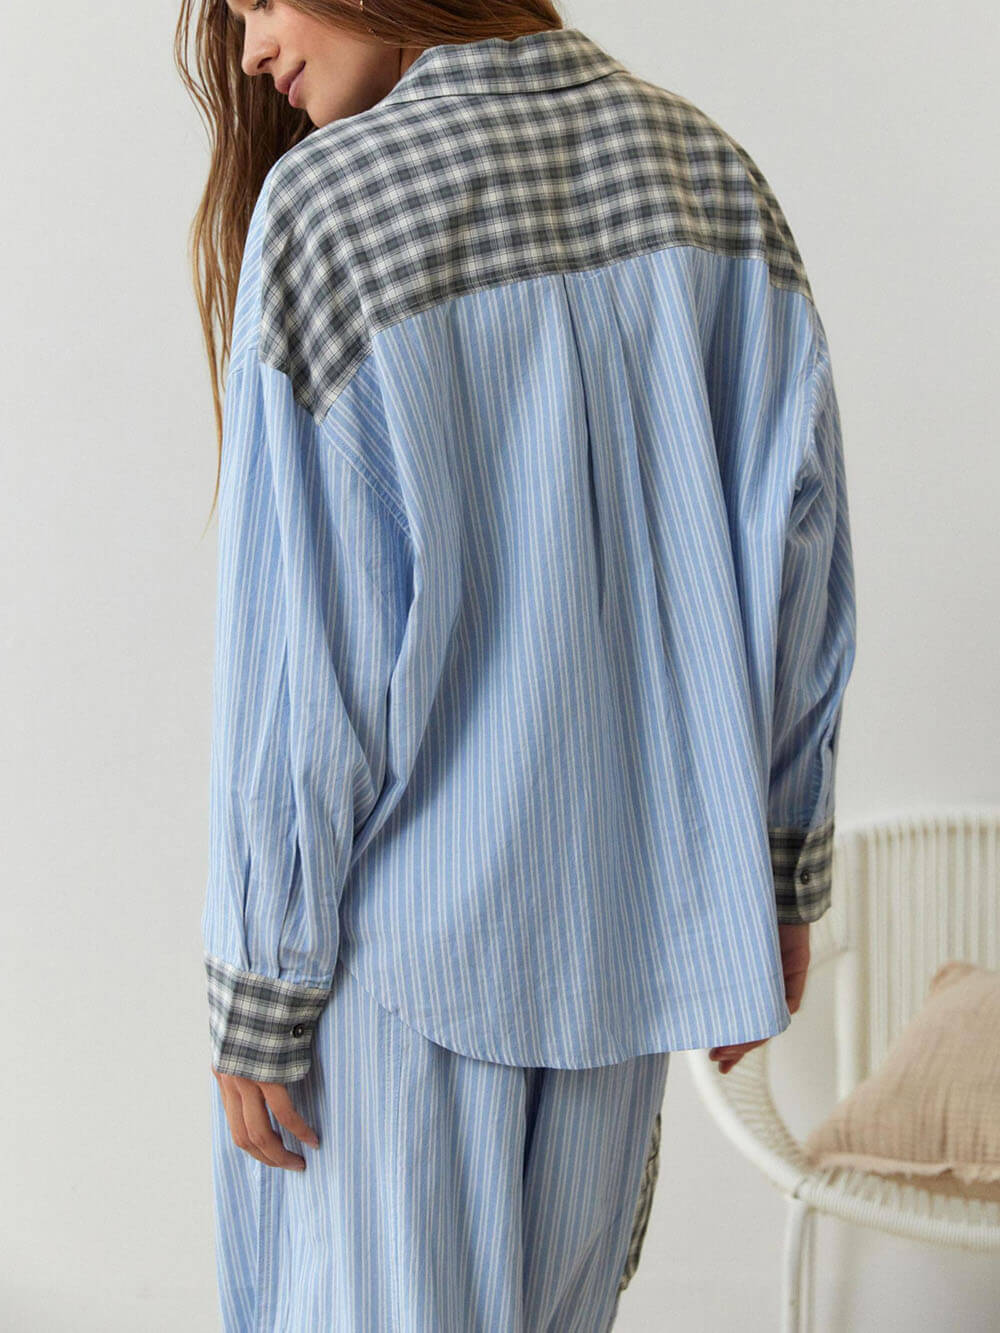 Hemelsblauwe pyjamaset met losse splitten